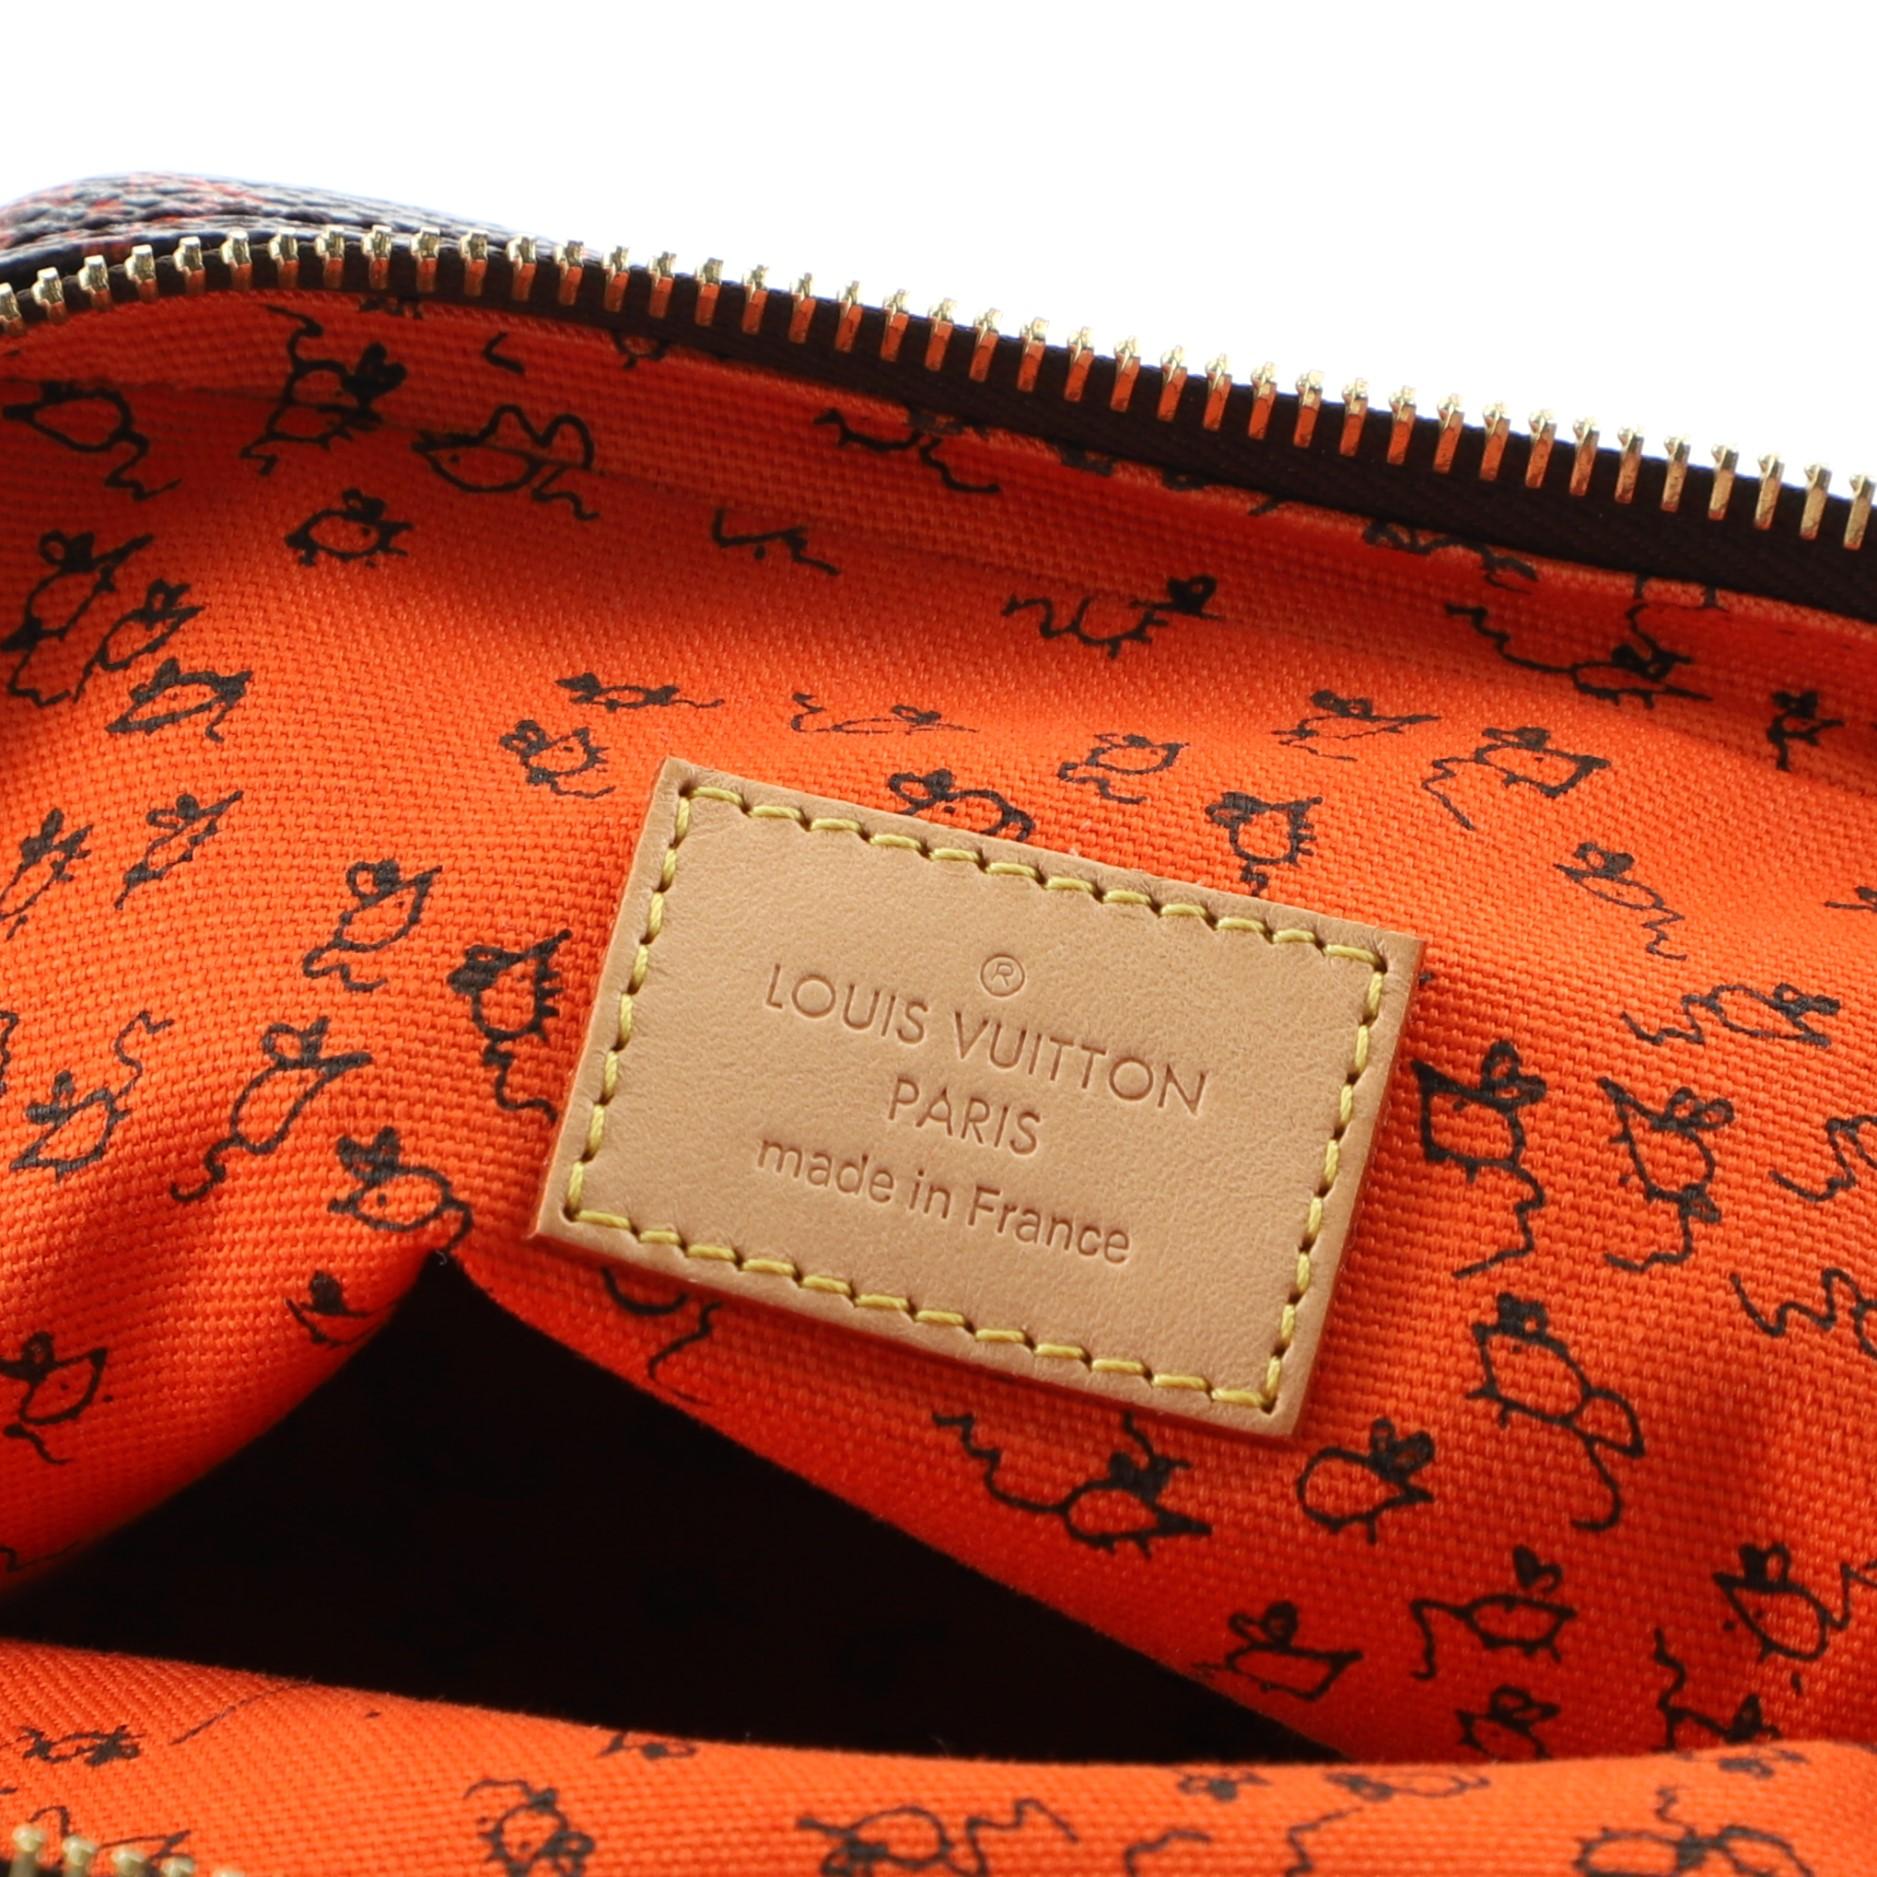 Louis Vuitton Paname Bag Limited Edition Grace Coddington Catogram Canvas MM 4